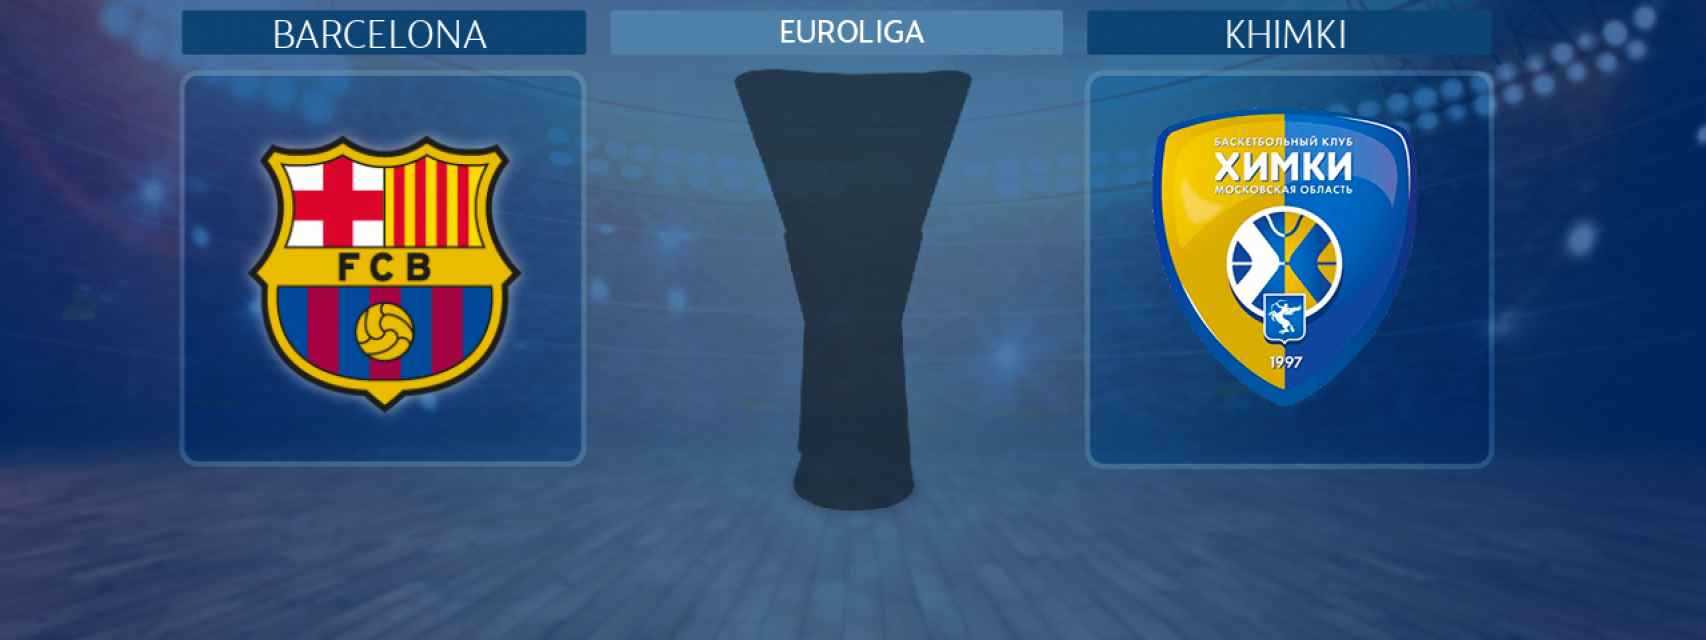 Barcelona - Khimki, partido de la Euroliga